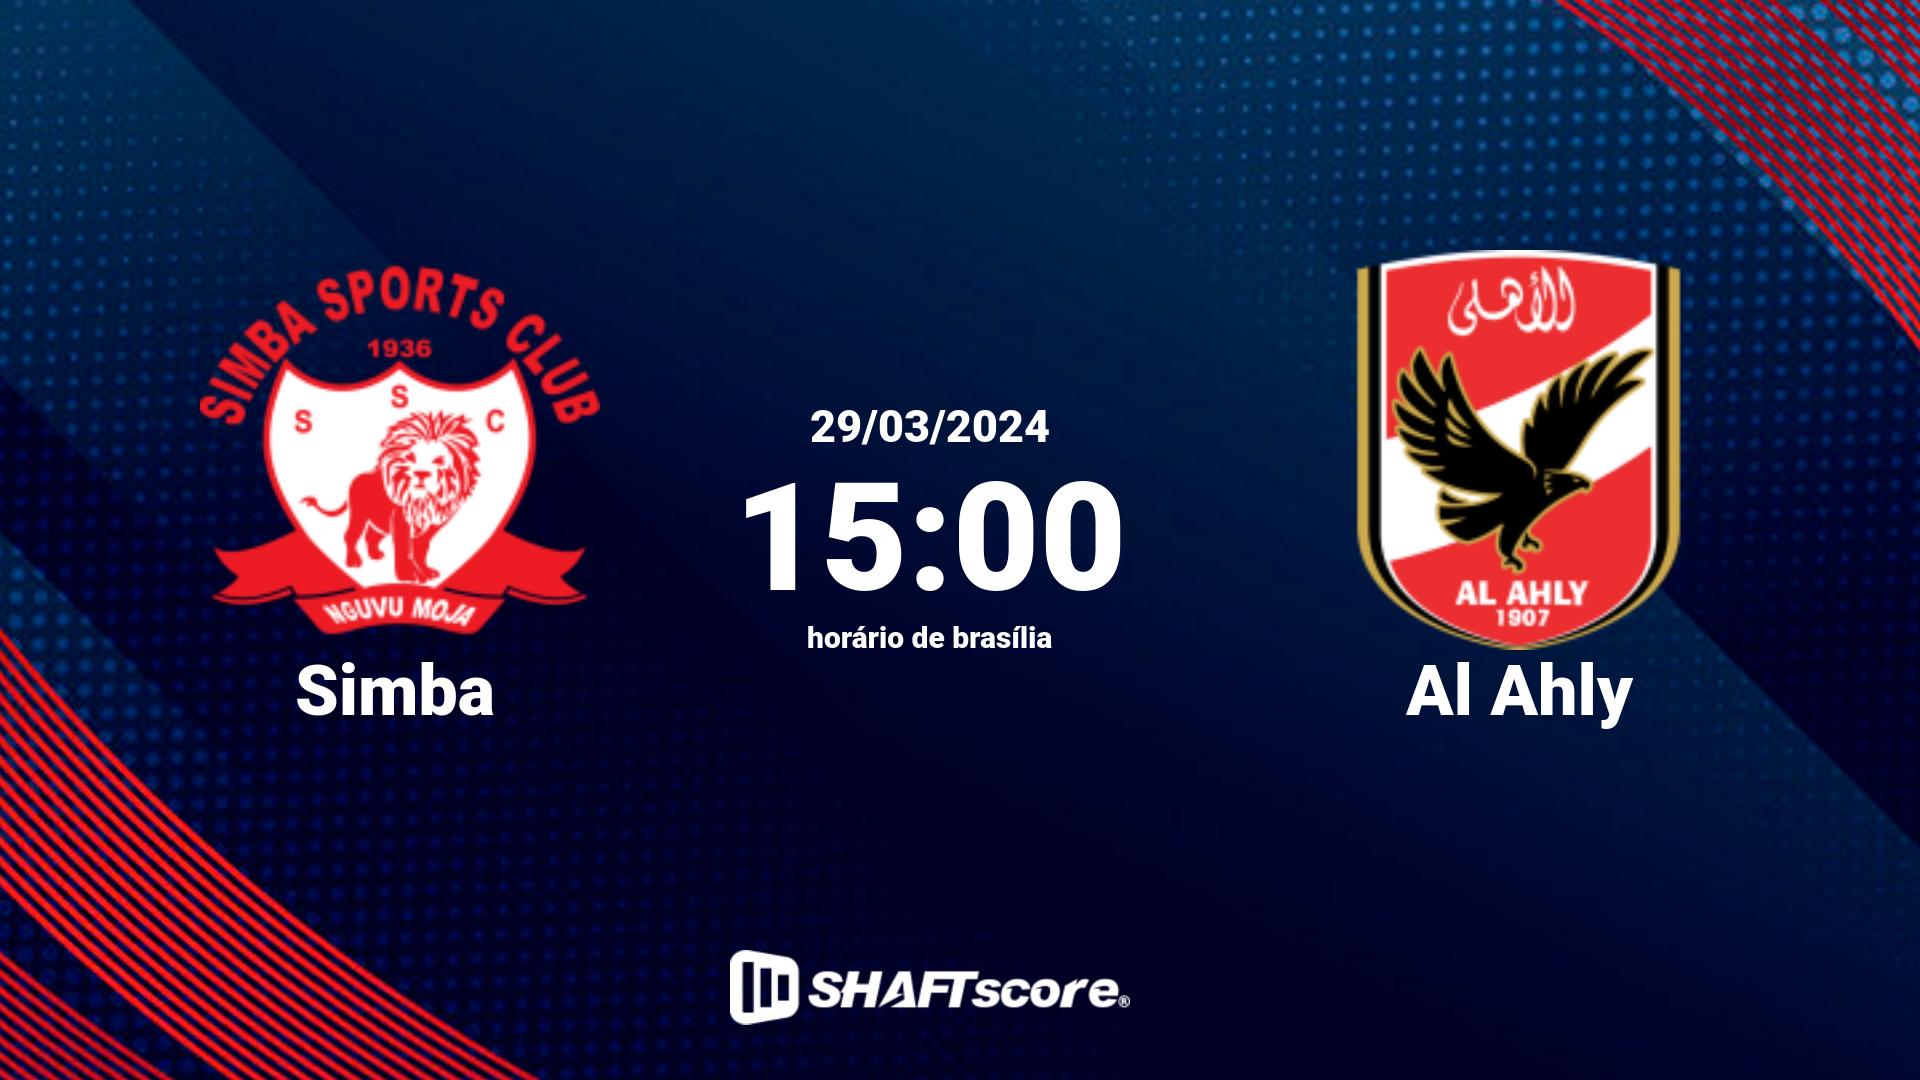 Estatísticas do jogo Simba vs Al Ahly 29.03 15:00